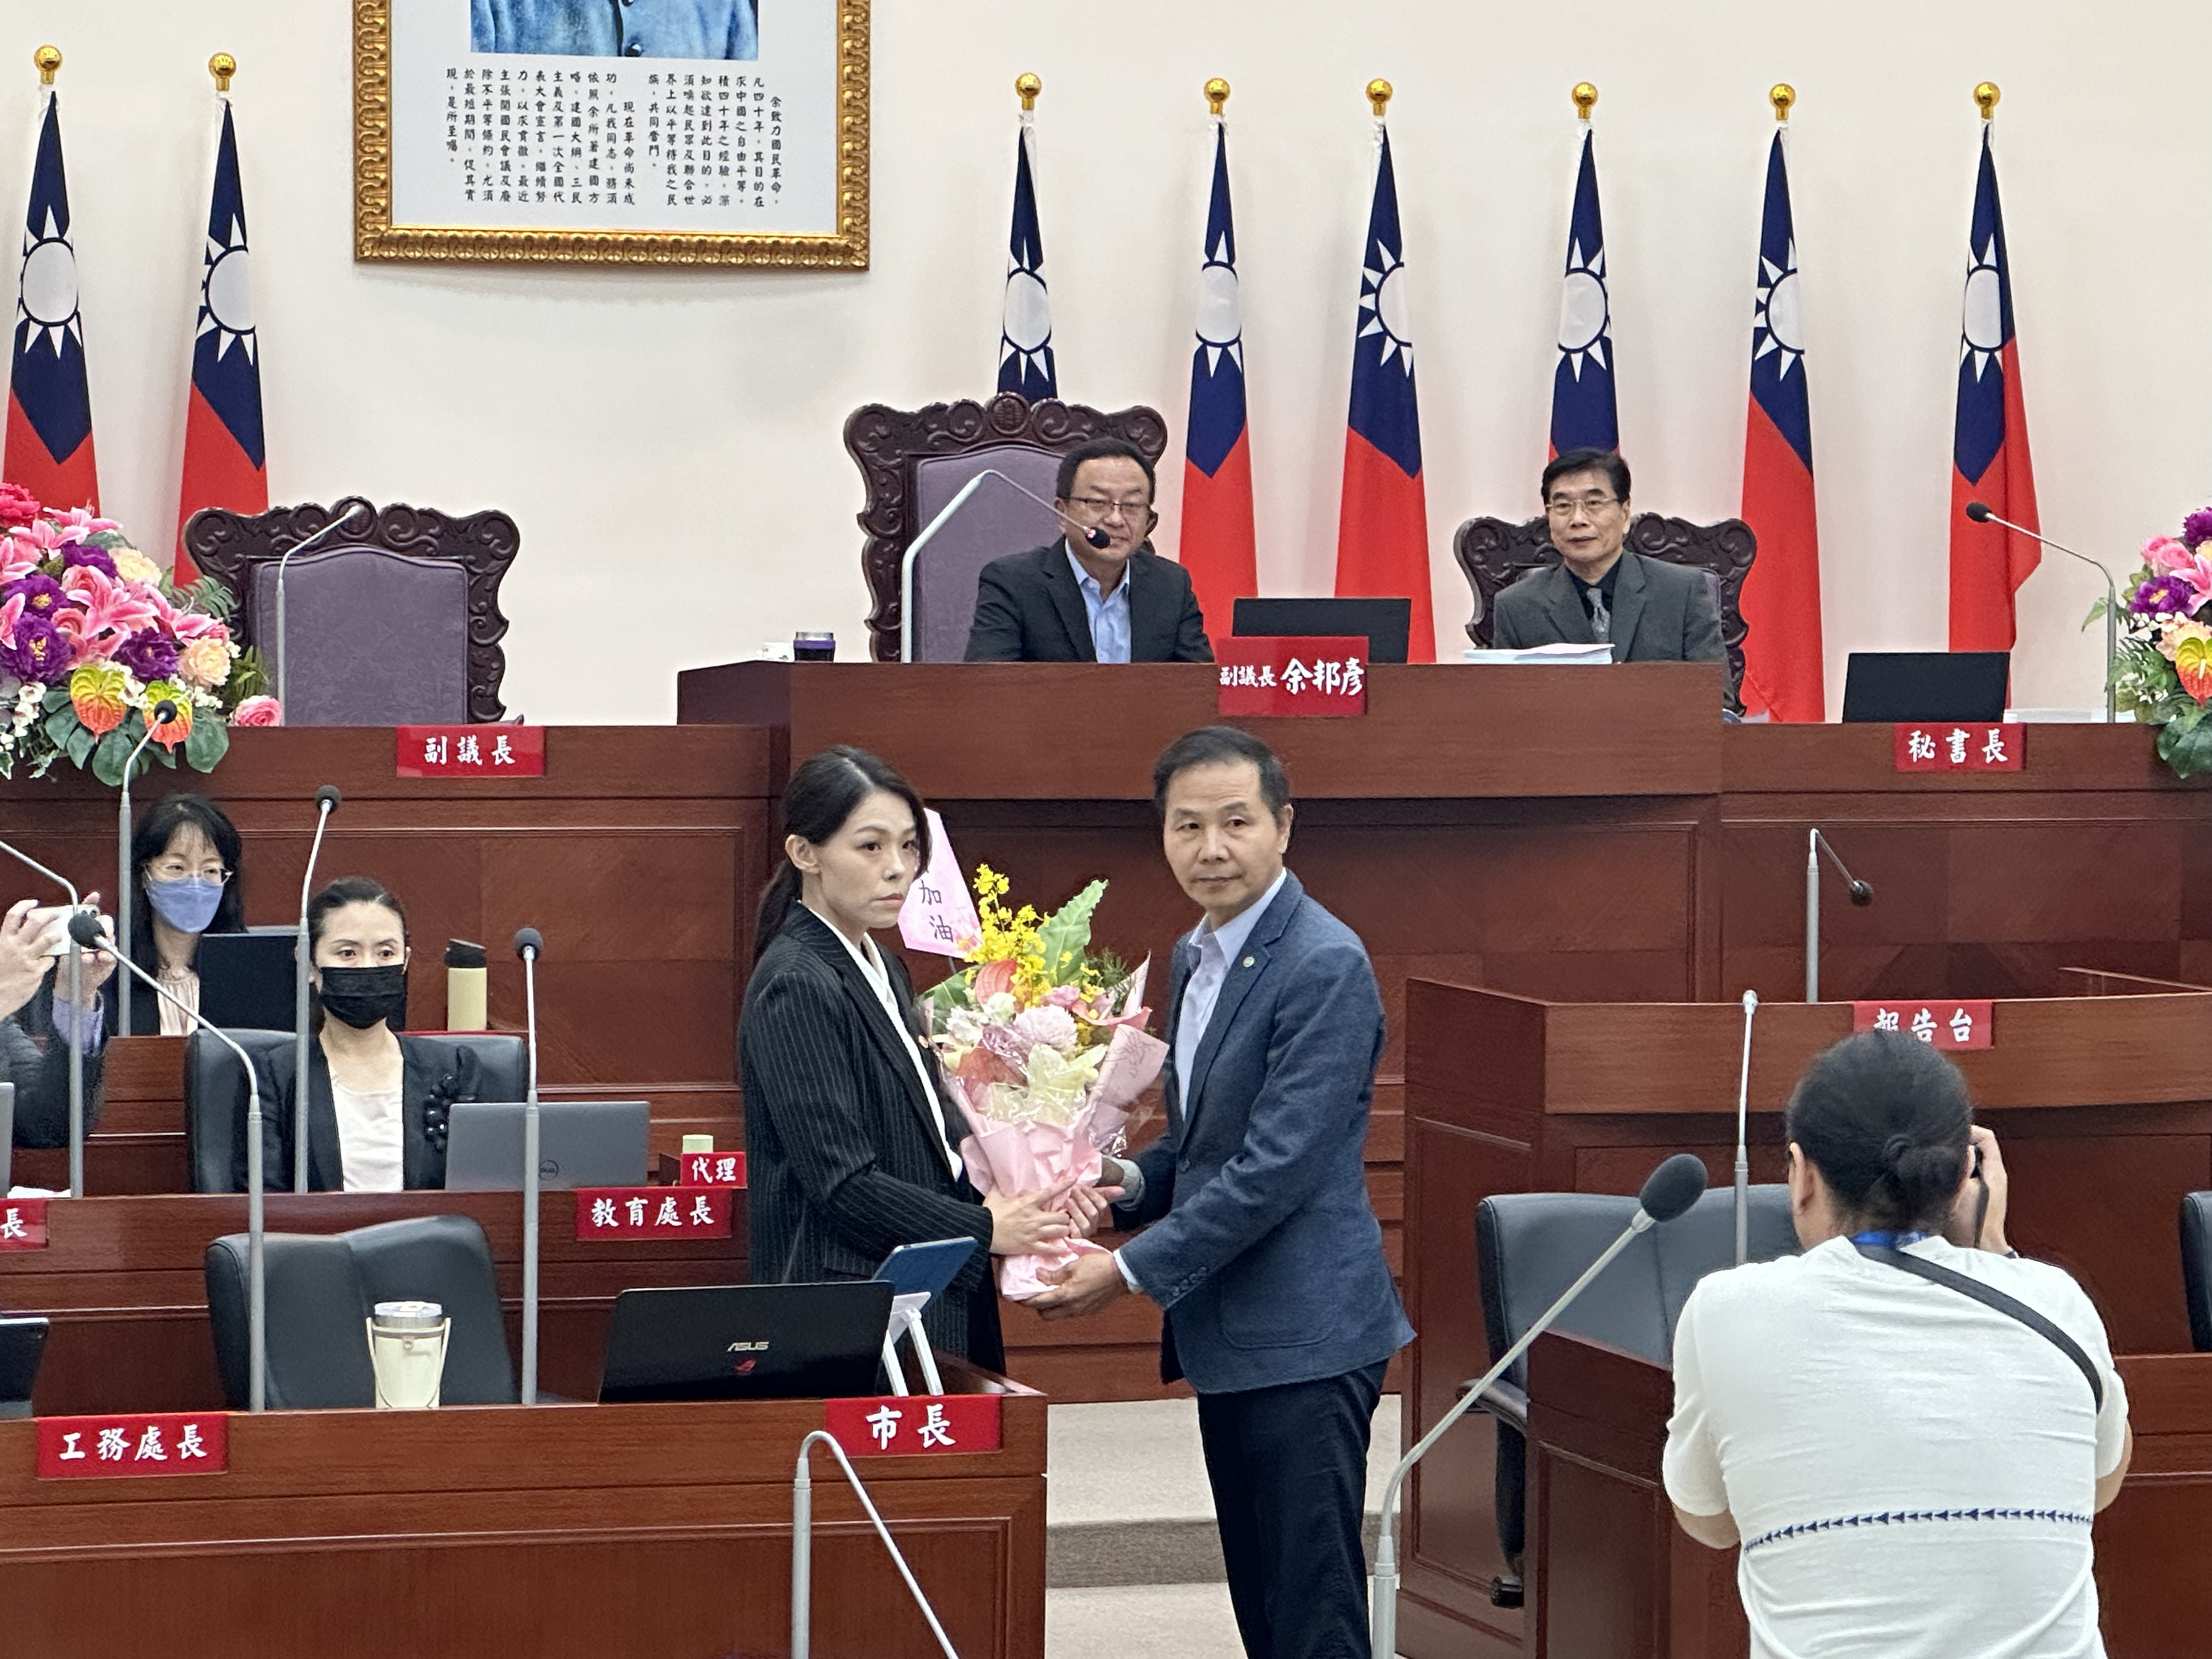 市长高虹安（左）接过市议员陈启源（右）致赠花束。记者巫鸿玮／摄影